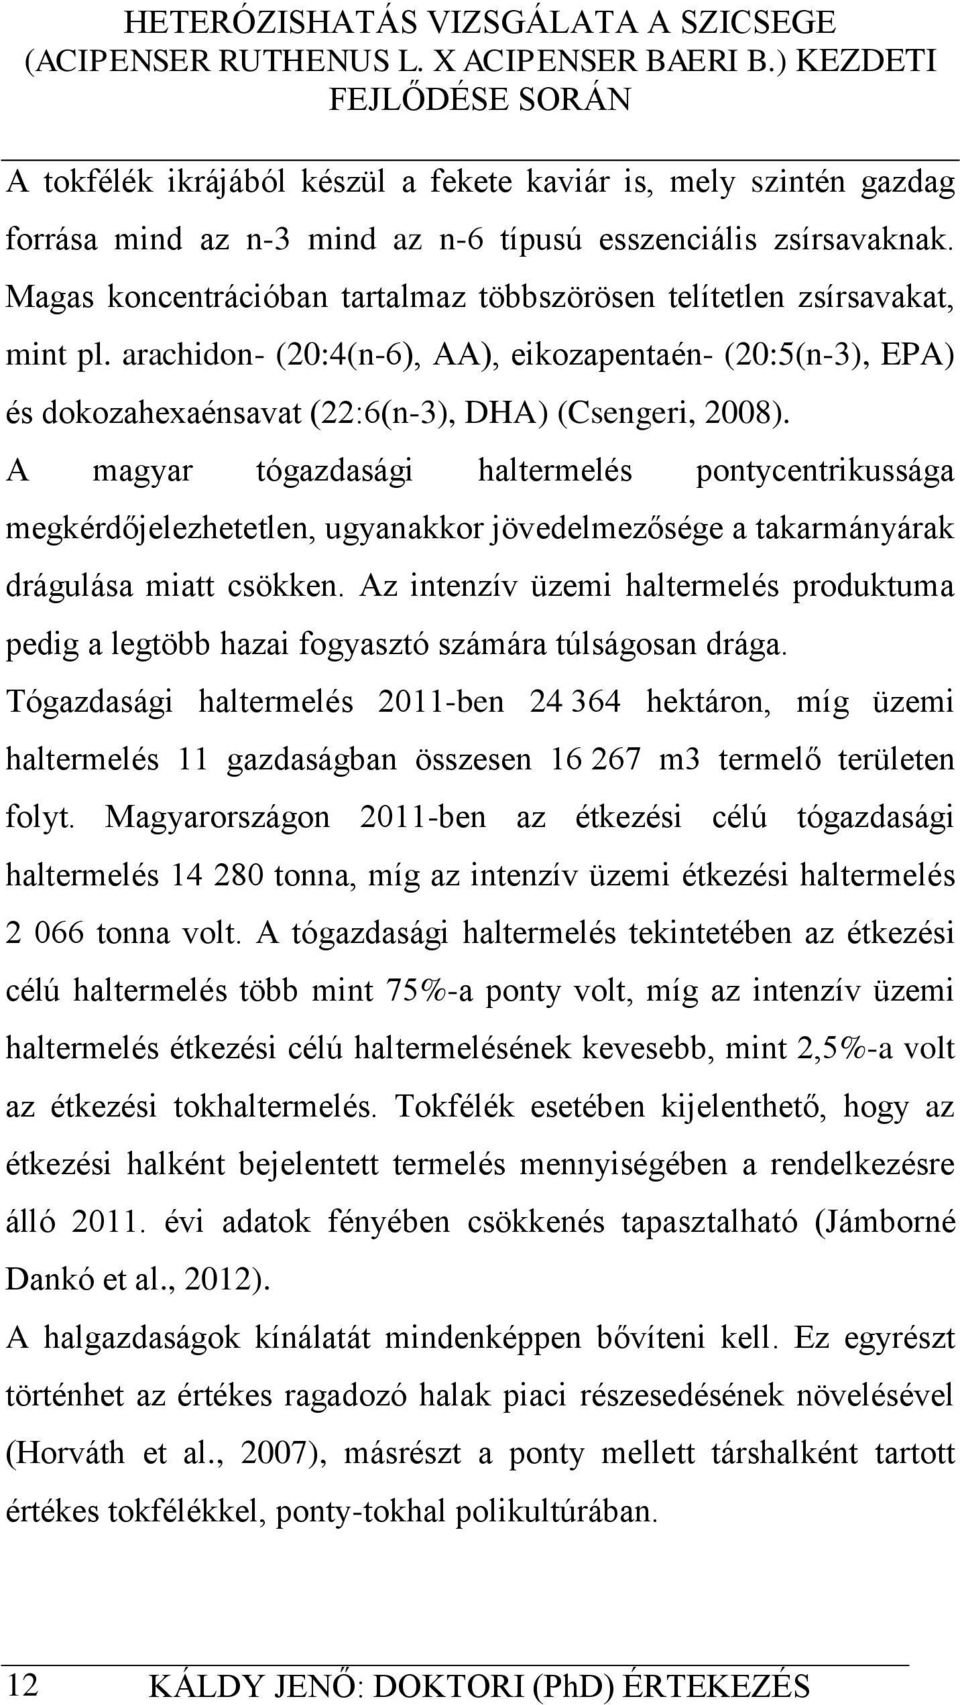 A magyar tógazdasági haltermelés pontycentrikussága megkérdőjelezhetetlen, ugyanakkor jövedelmezősége a takarmányárak drágulása miatt csökken.